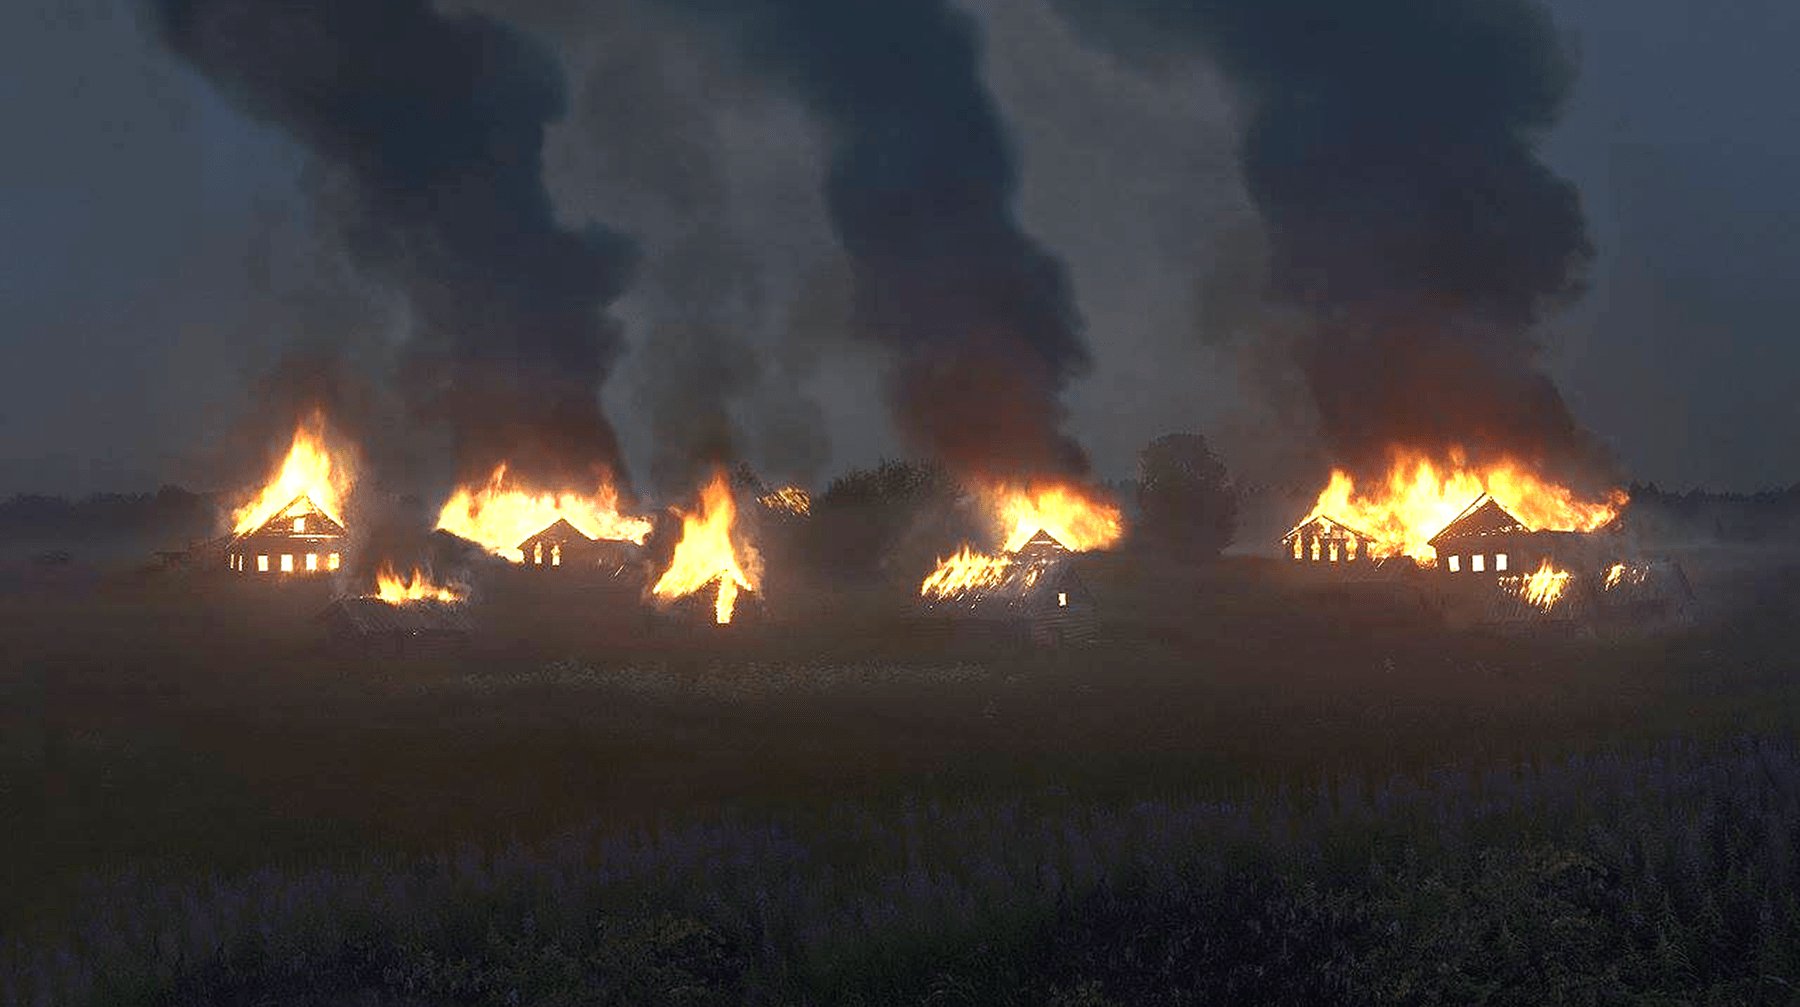 Dailystorm - Это по-русски: взять и сжечь деревню ради фотографии